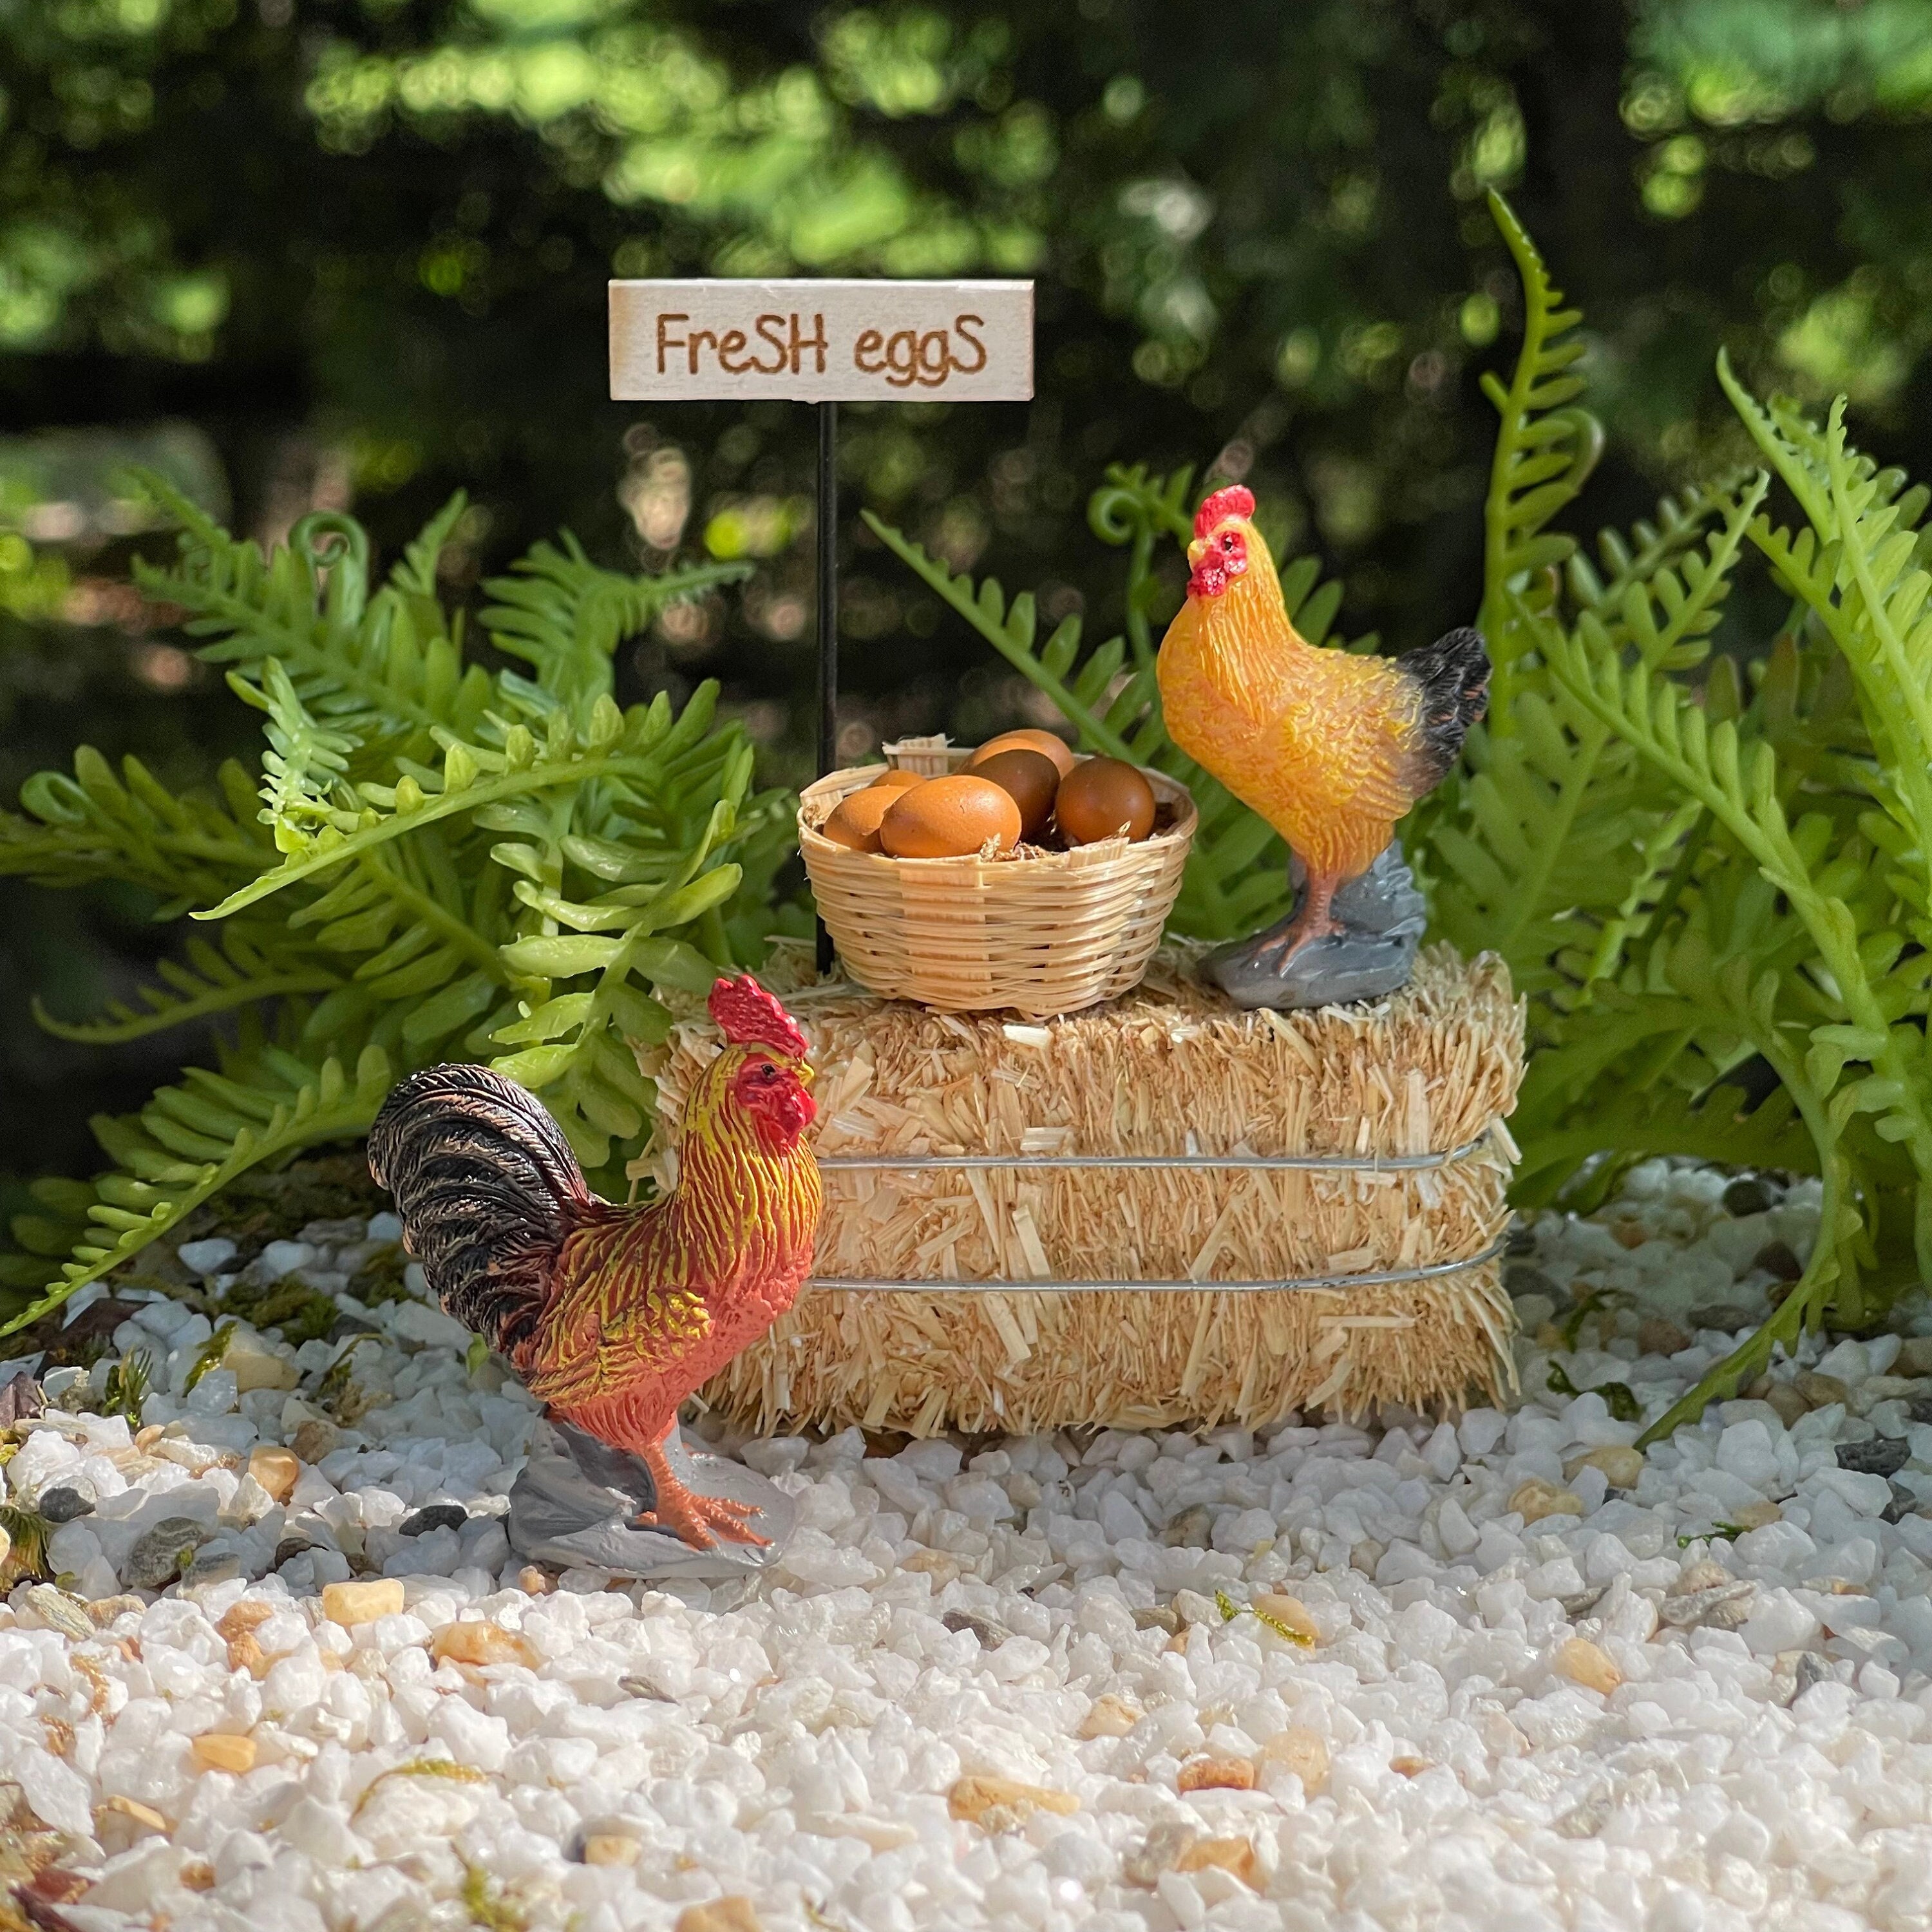 New Ceramic Egg Holder Chicken Wire Egg Basket Fruit Basket